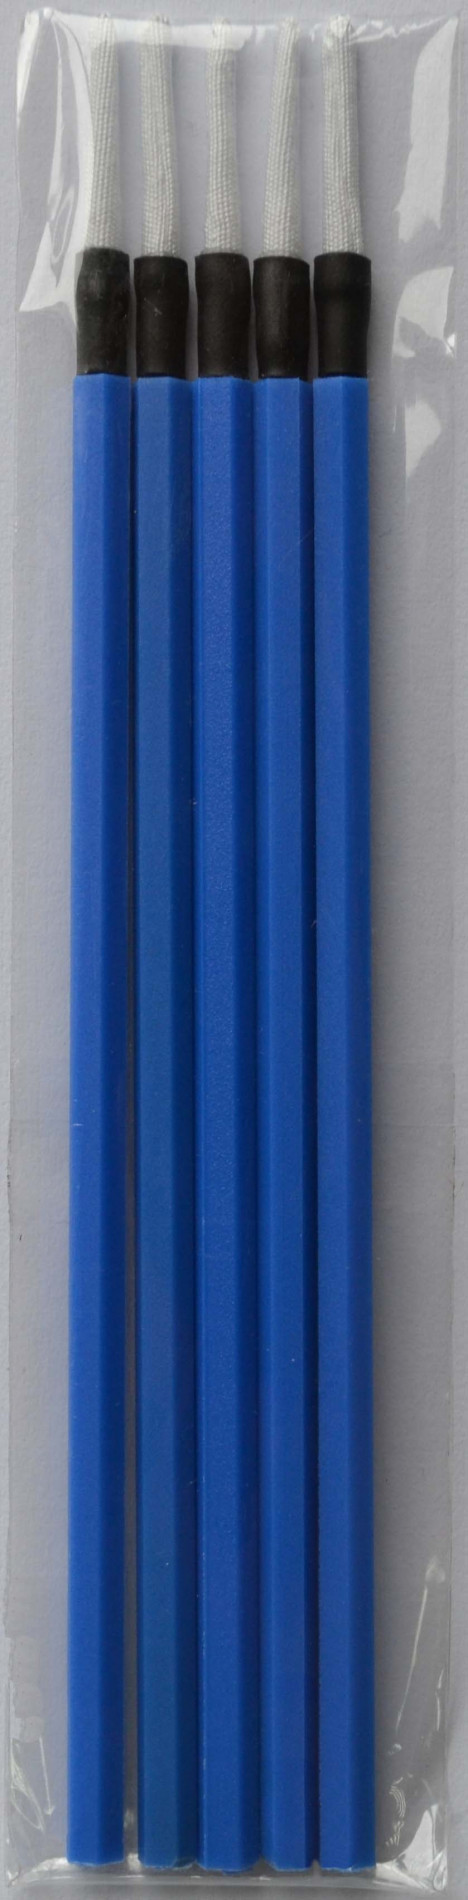 Grandway CLN2-002-02 - палочки очистительные безворсовые 1,25мм для .